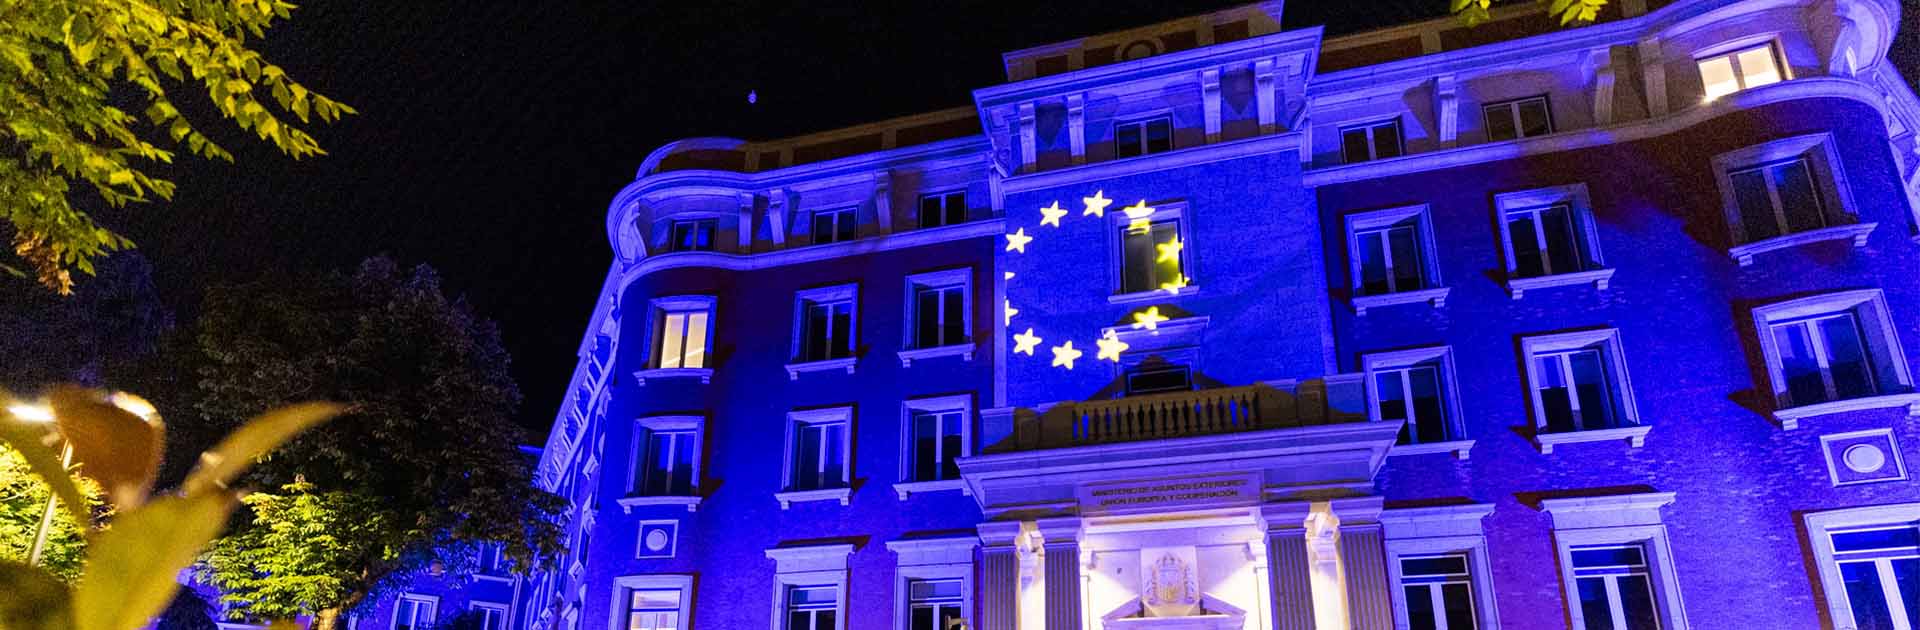 Ministerio de Asuntos Exteriores en Madrid, España, iluminado con los colores de la bandera de la Unión Europea.